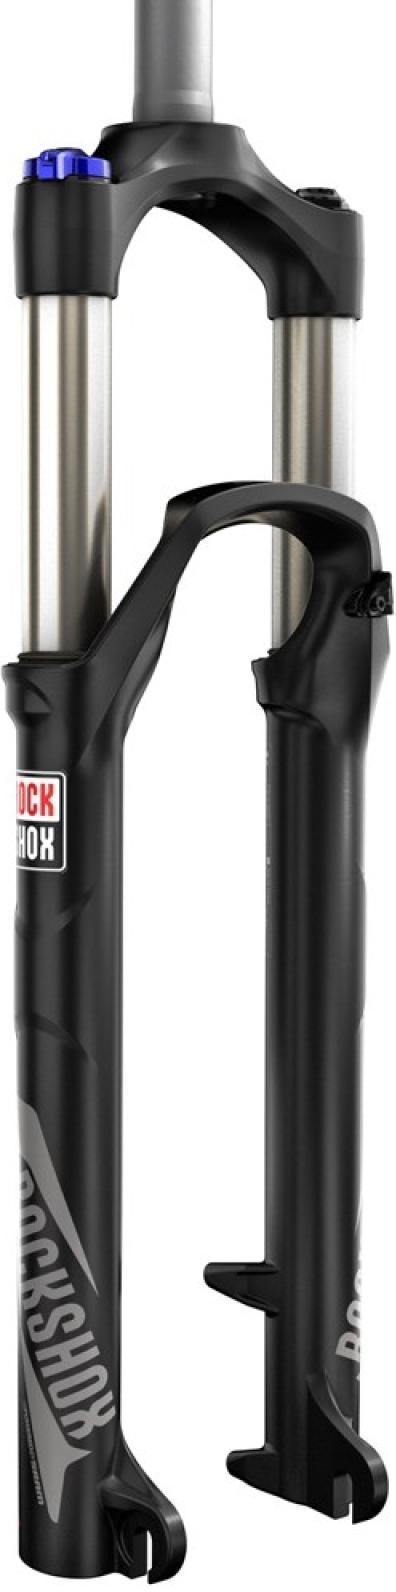 Eerlijkheid De schuld geven Mededogen RockShox Recon Silver TK Fork Solo Air • Premium street sport equipment